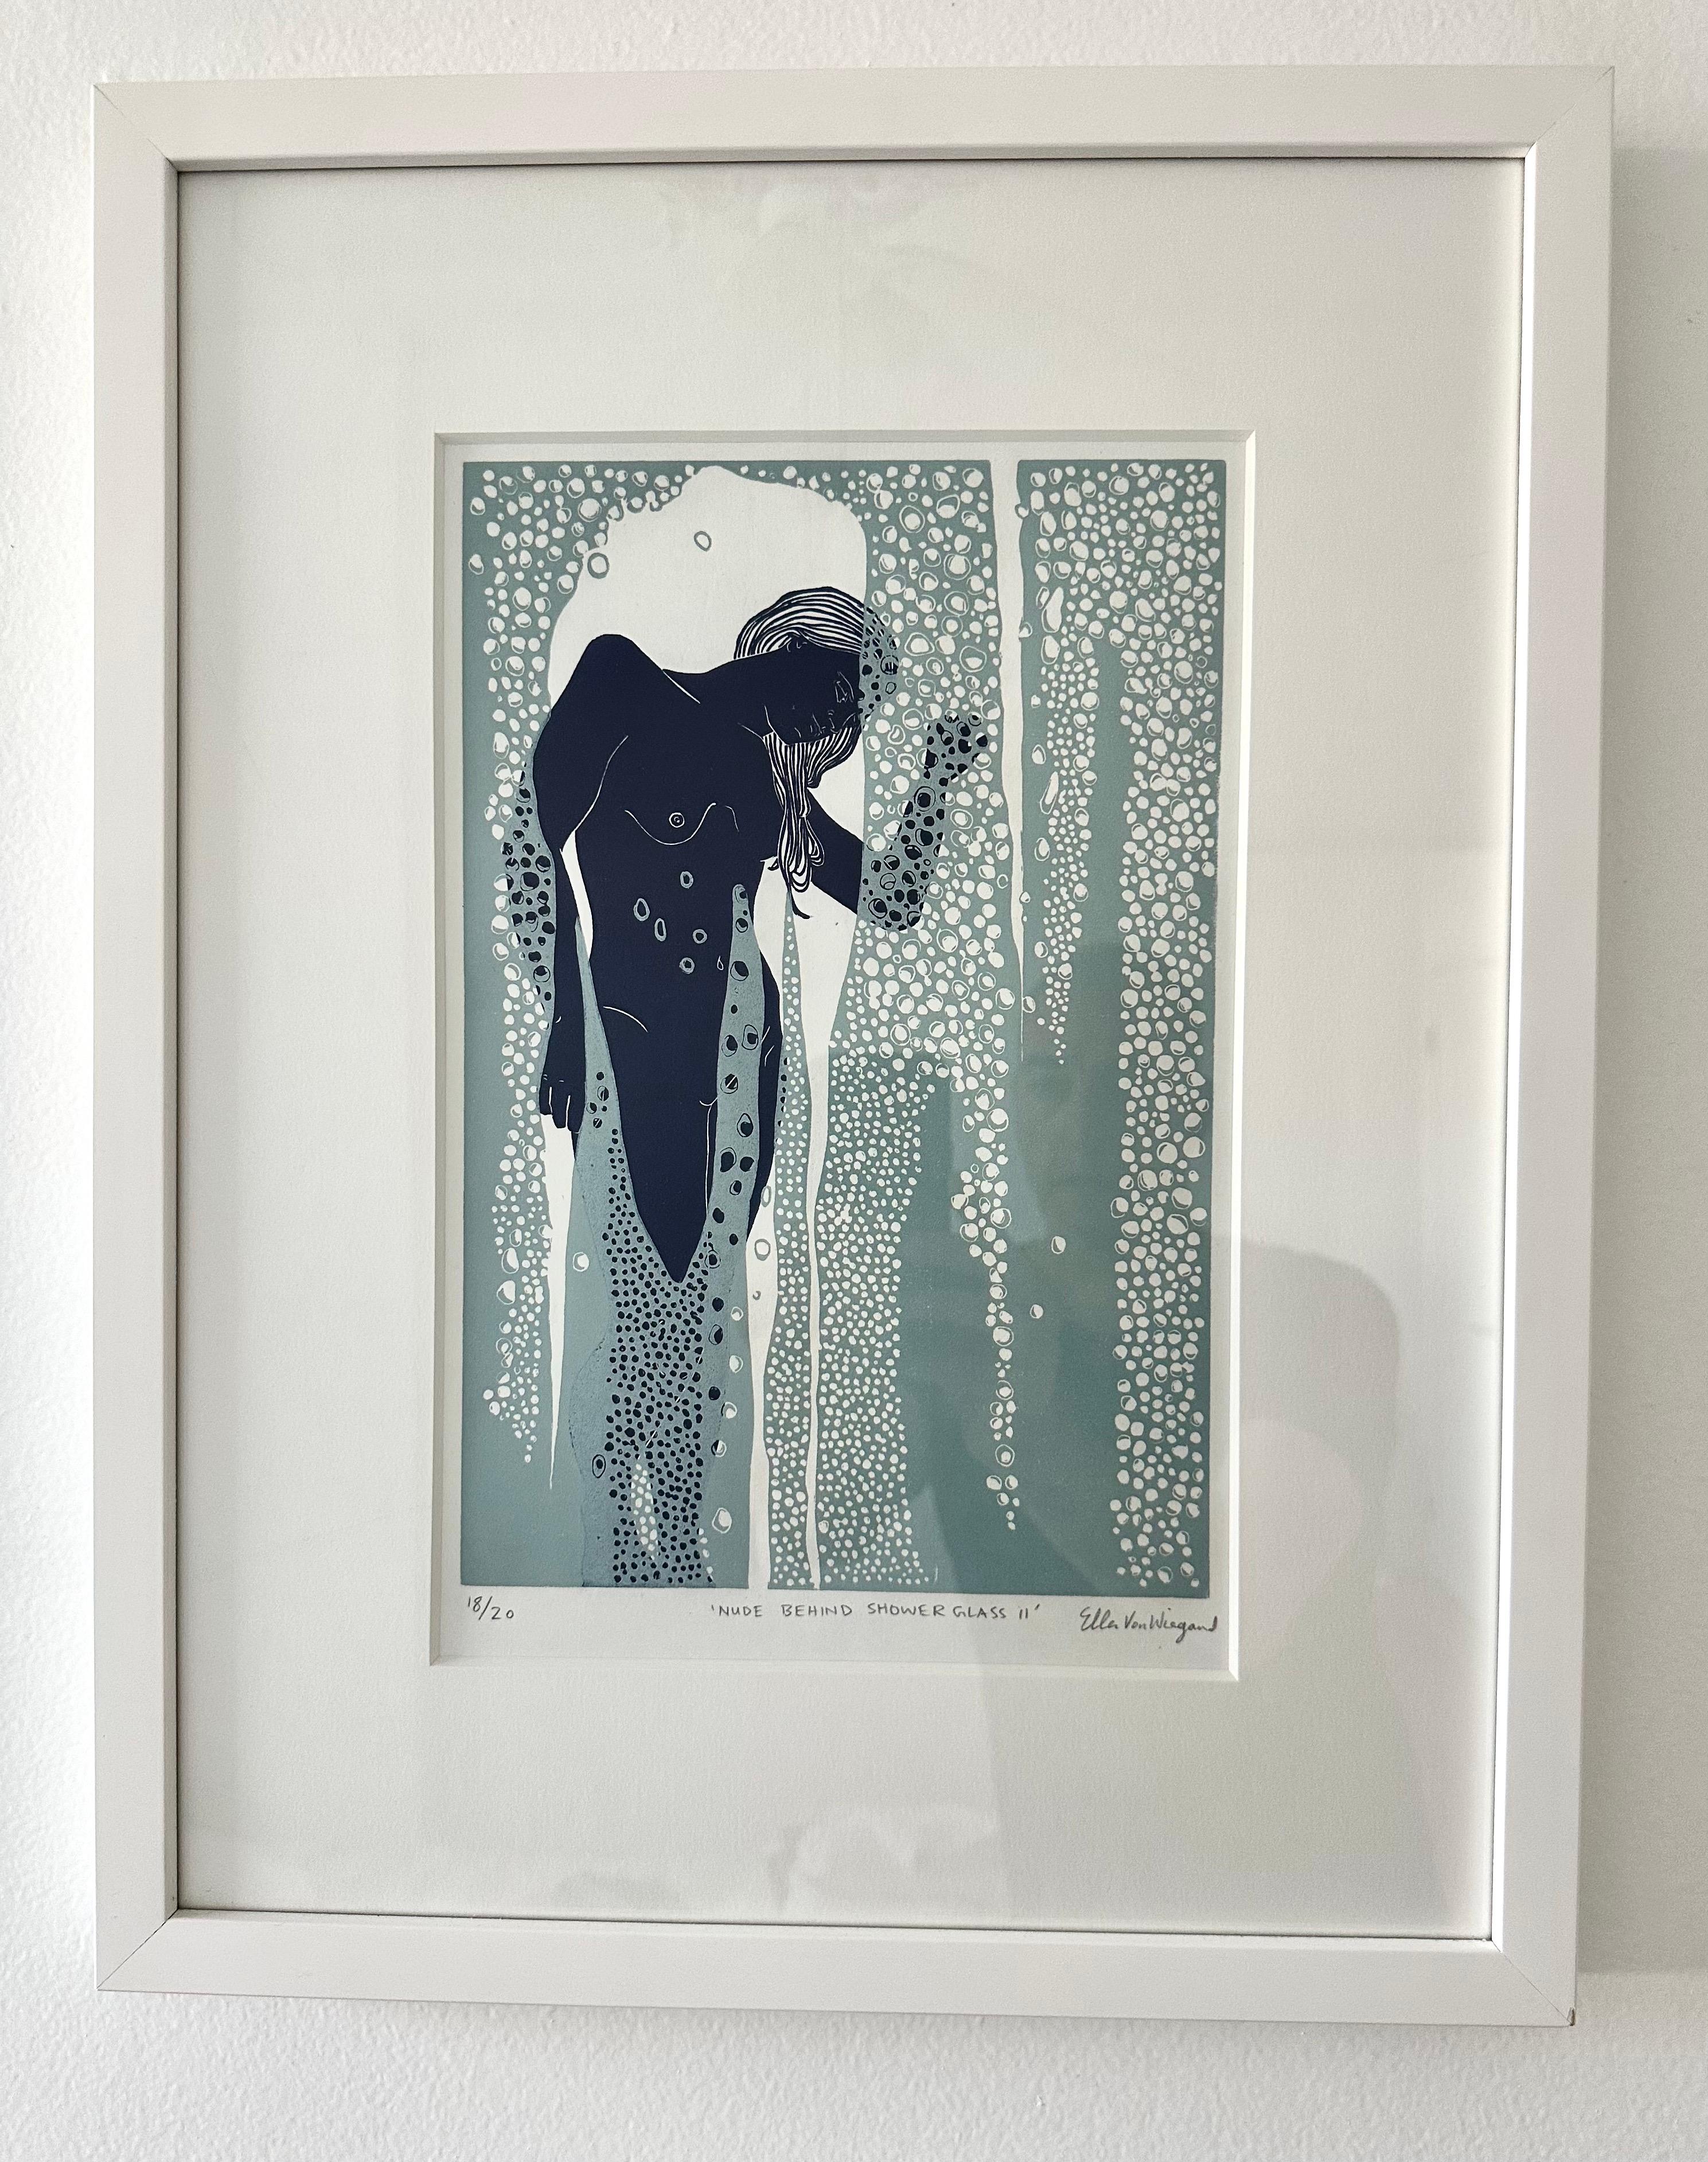 Akt hinter dem Schaufensterglas II, weiblicher figurativer Originaldruck im Linoschliff, gerahmt (Zeitgenössisch), Print, von Ellen Von Wiegand